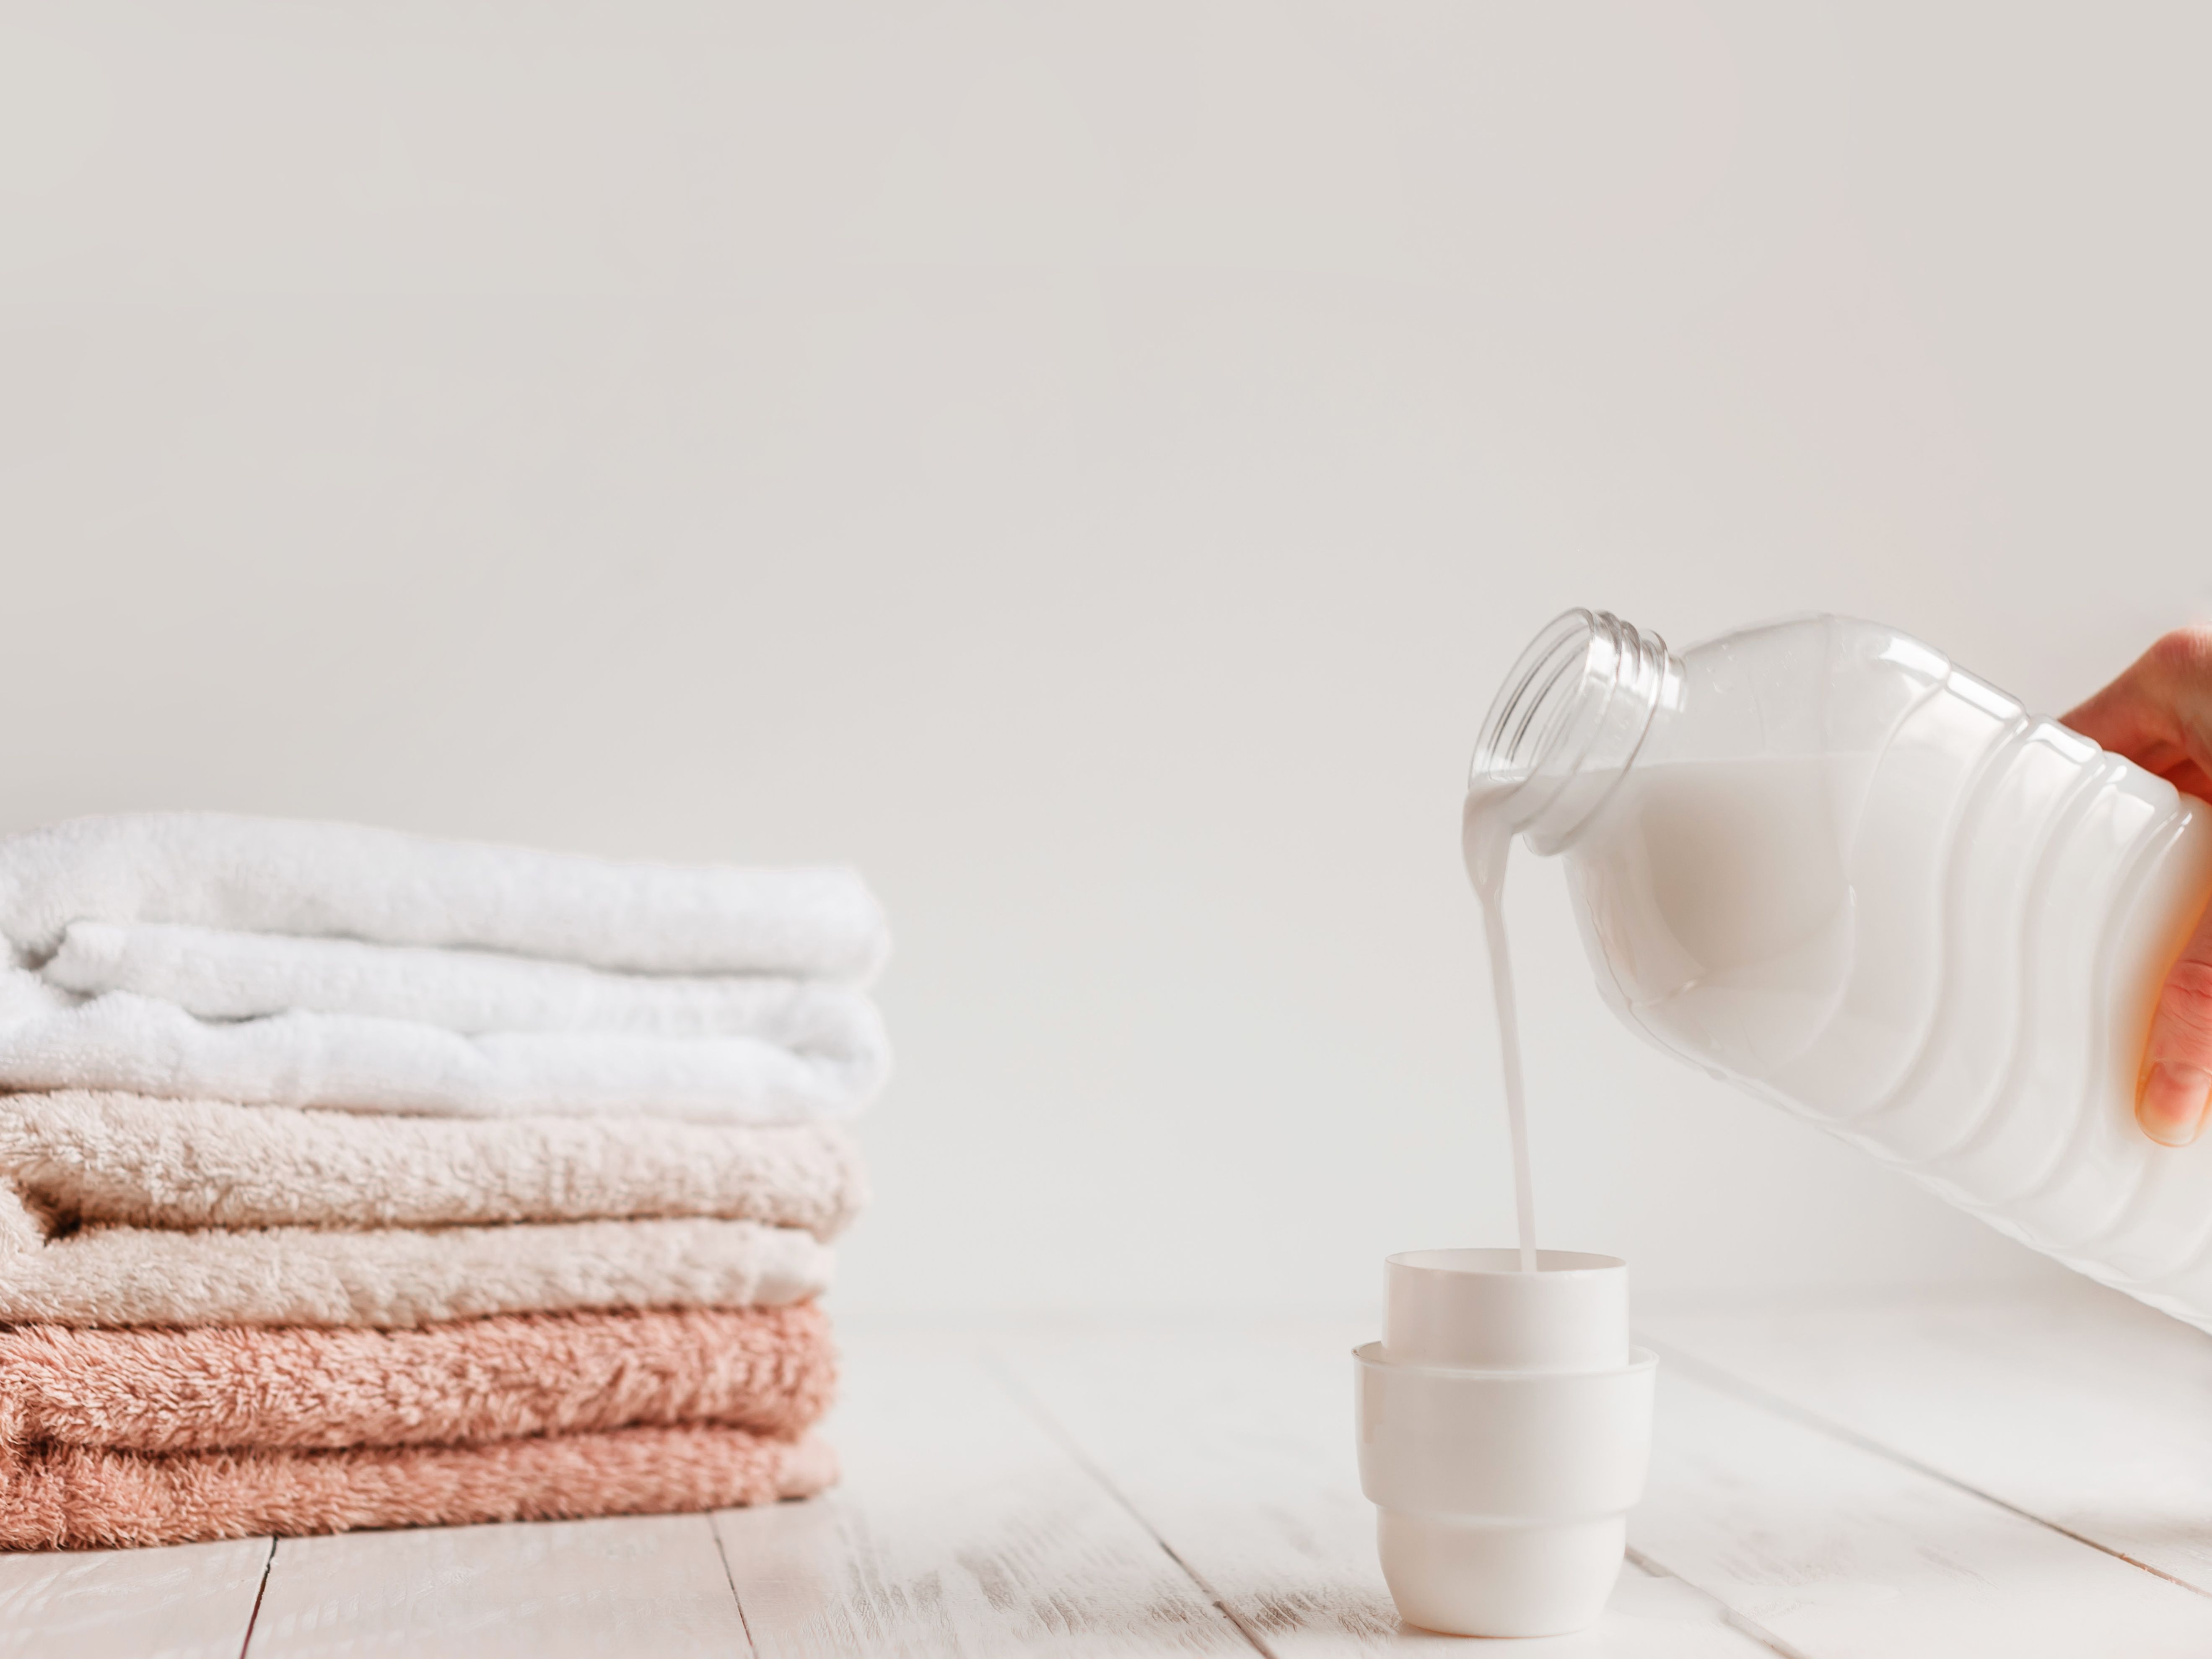 Comment fabriquer sa lessive maison - Organiser son quotidien